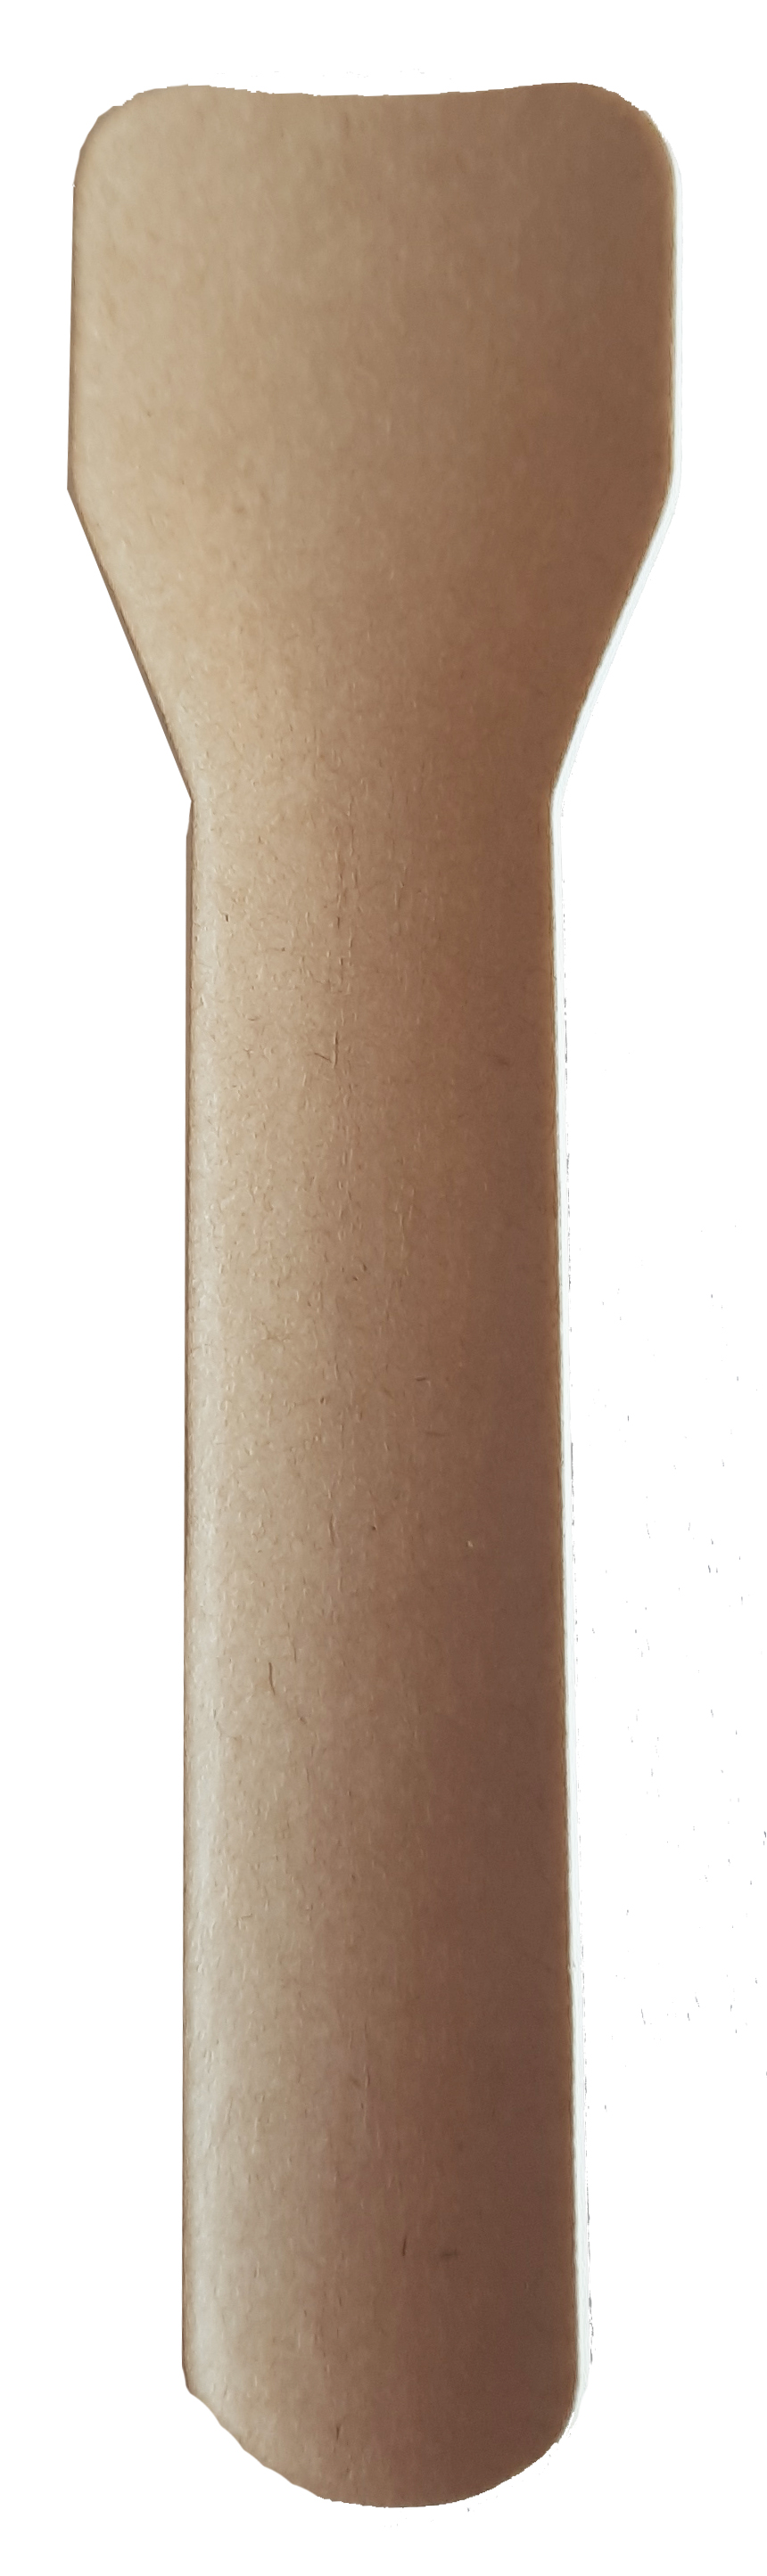 IJslepel papier P2P 94mm bruin (doos à 20x150st)